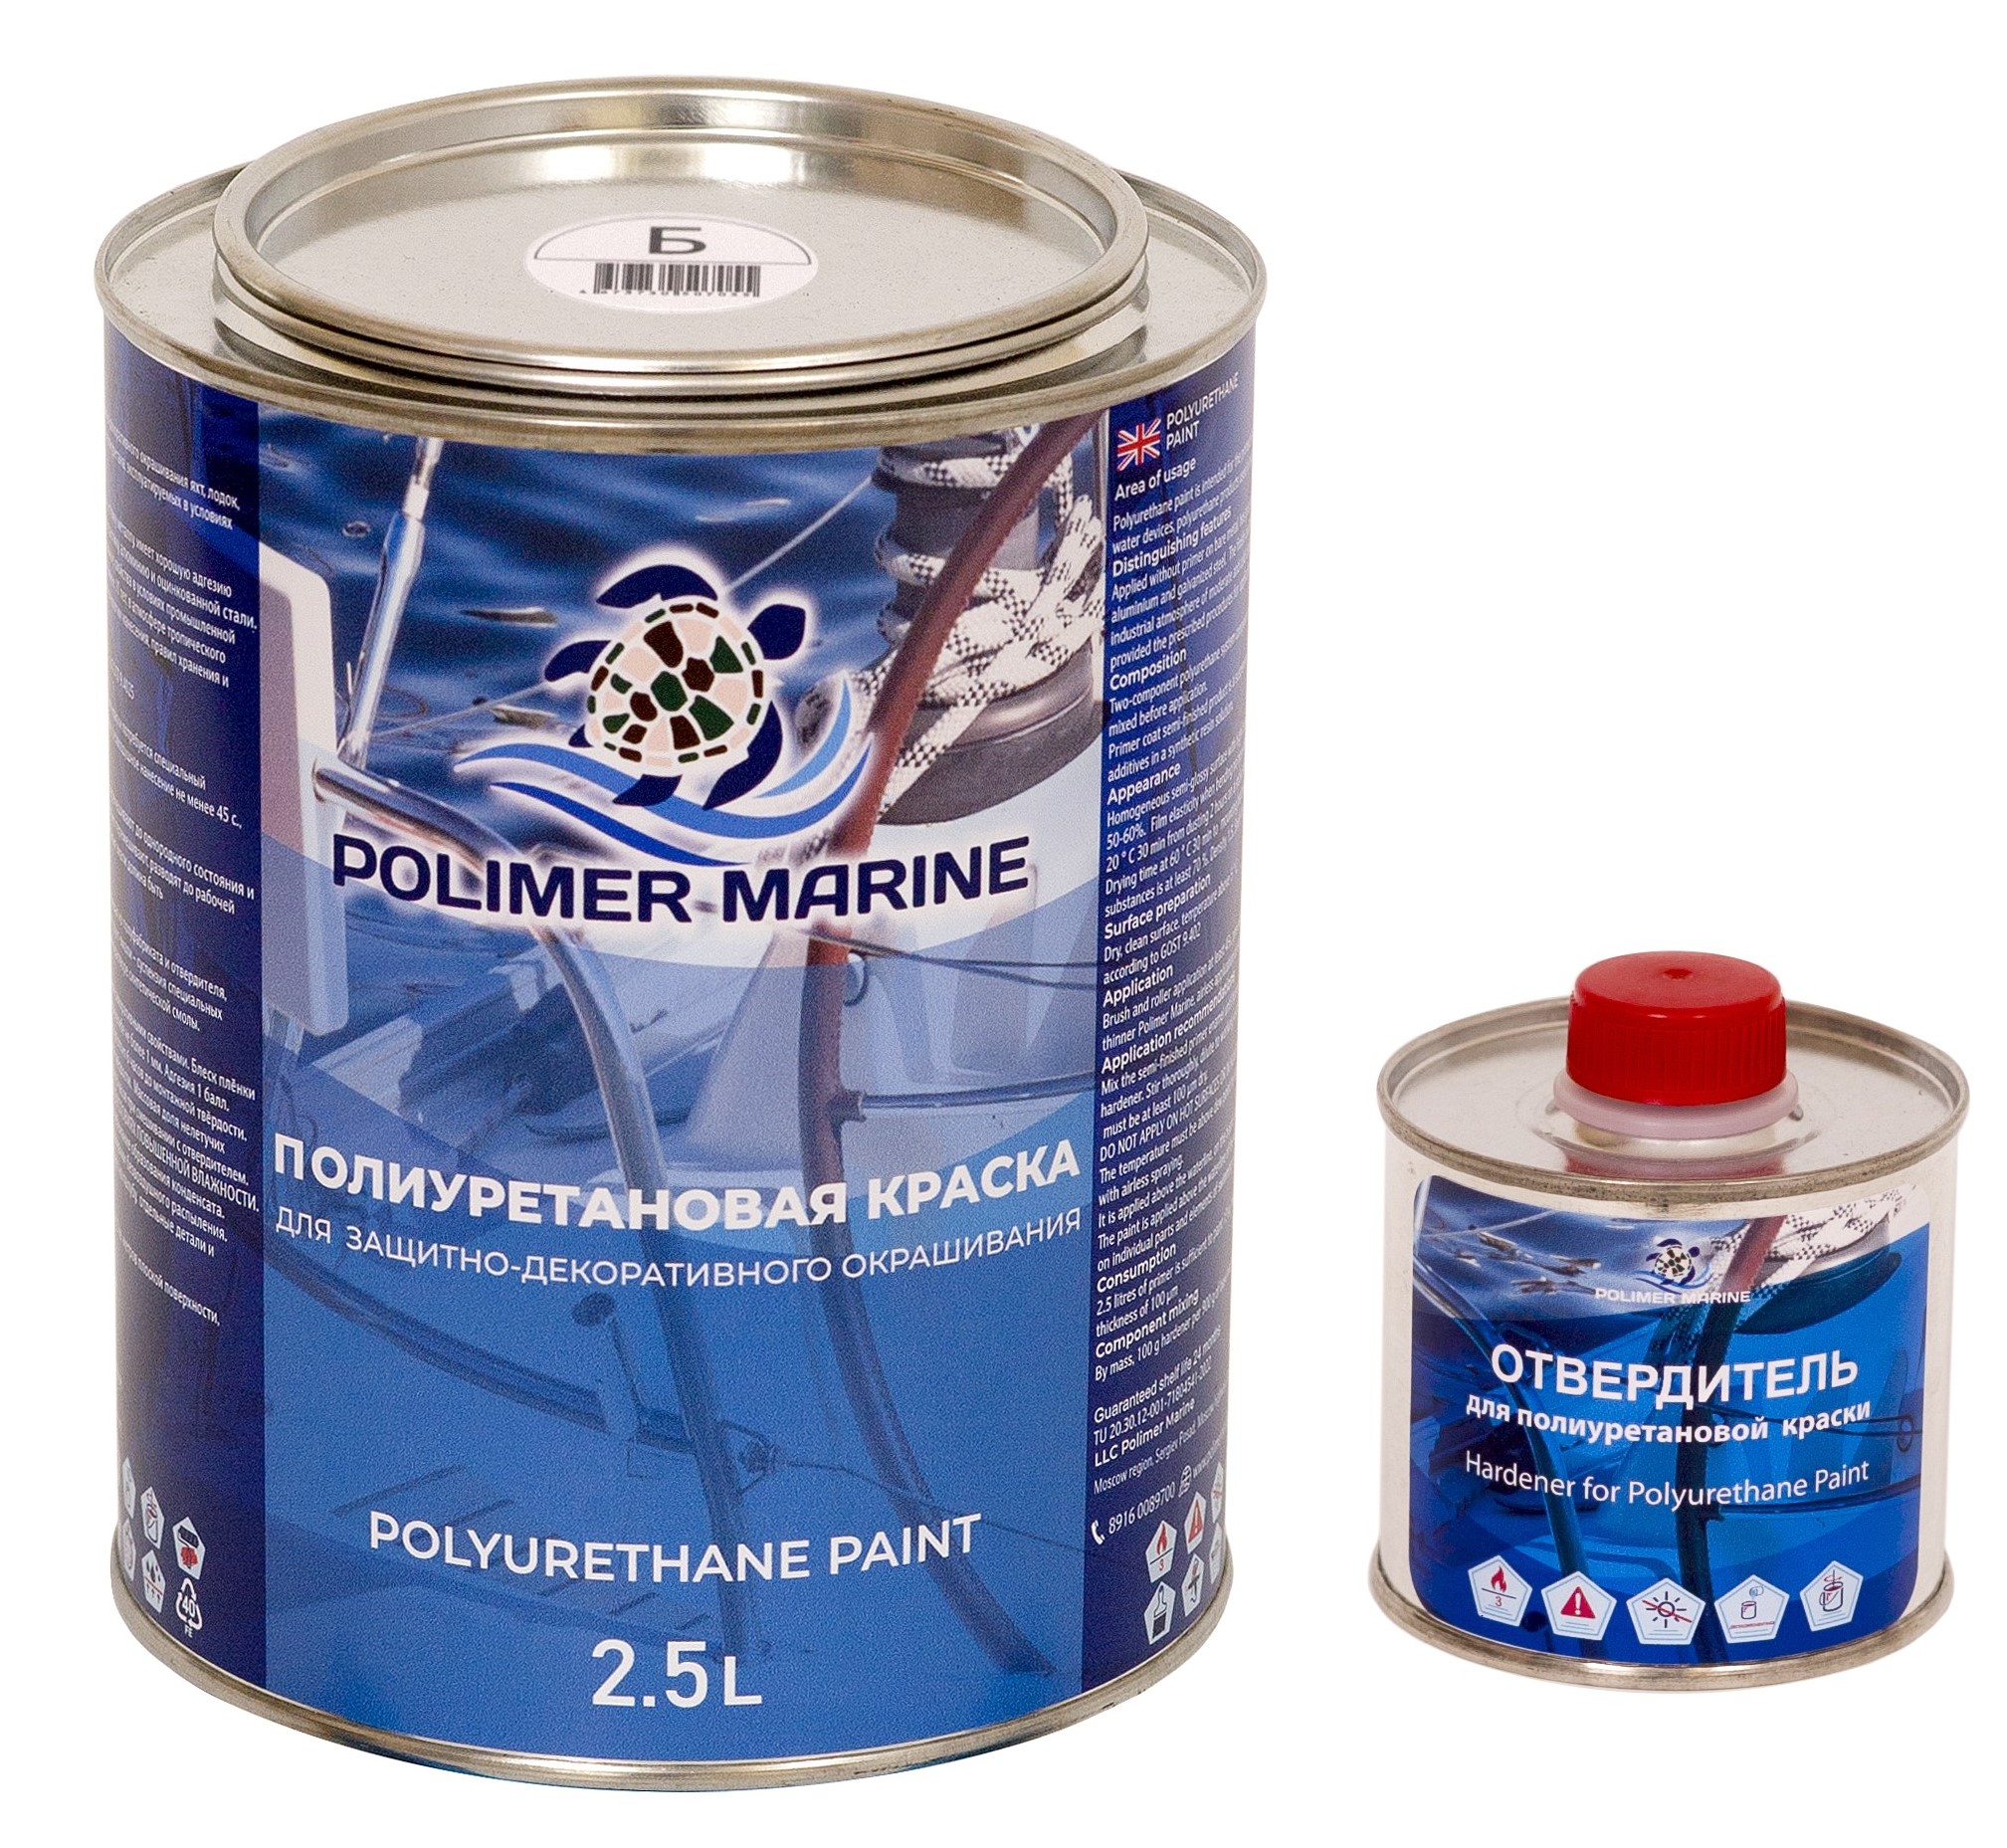 Полиуретановая краска Polimer Marine КП Кп25б белая 2.5 л двухкомпонентная 2К необрастающая краска polimer marine